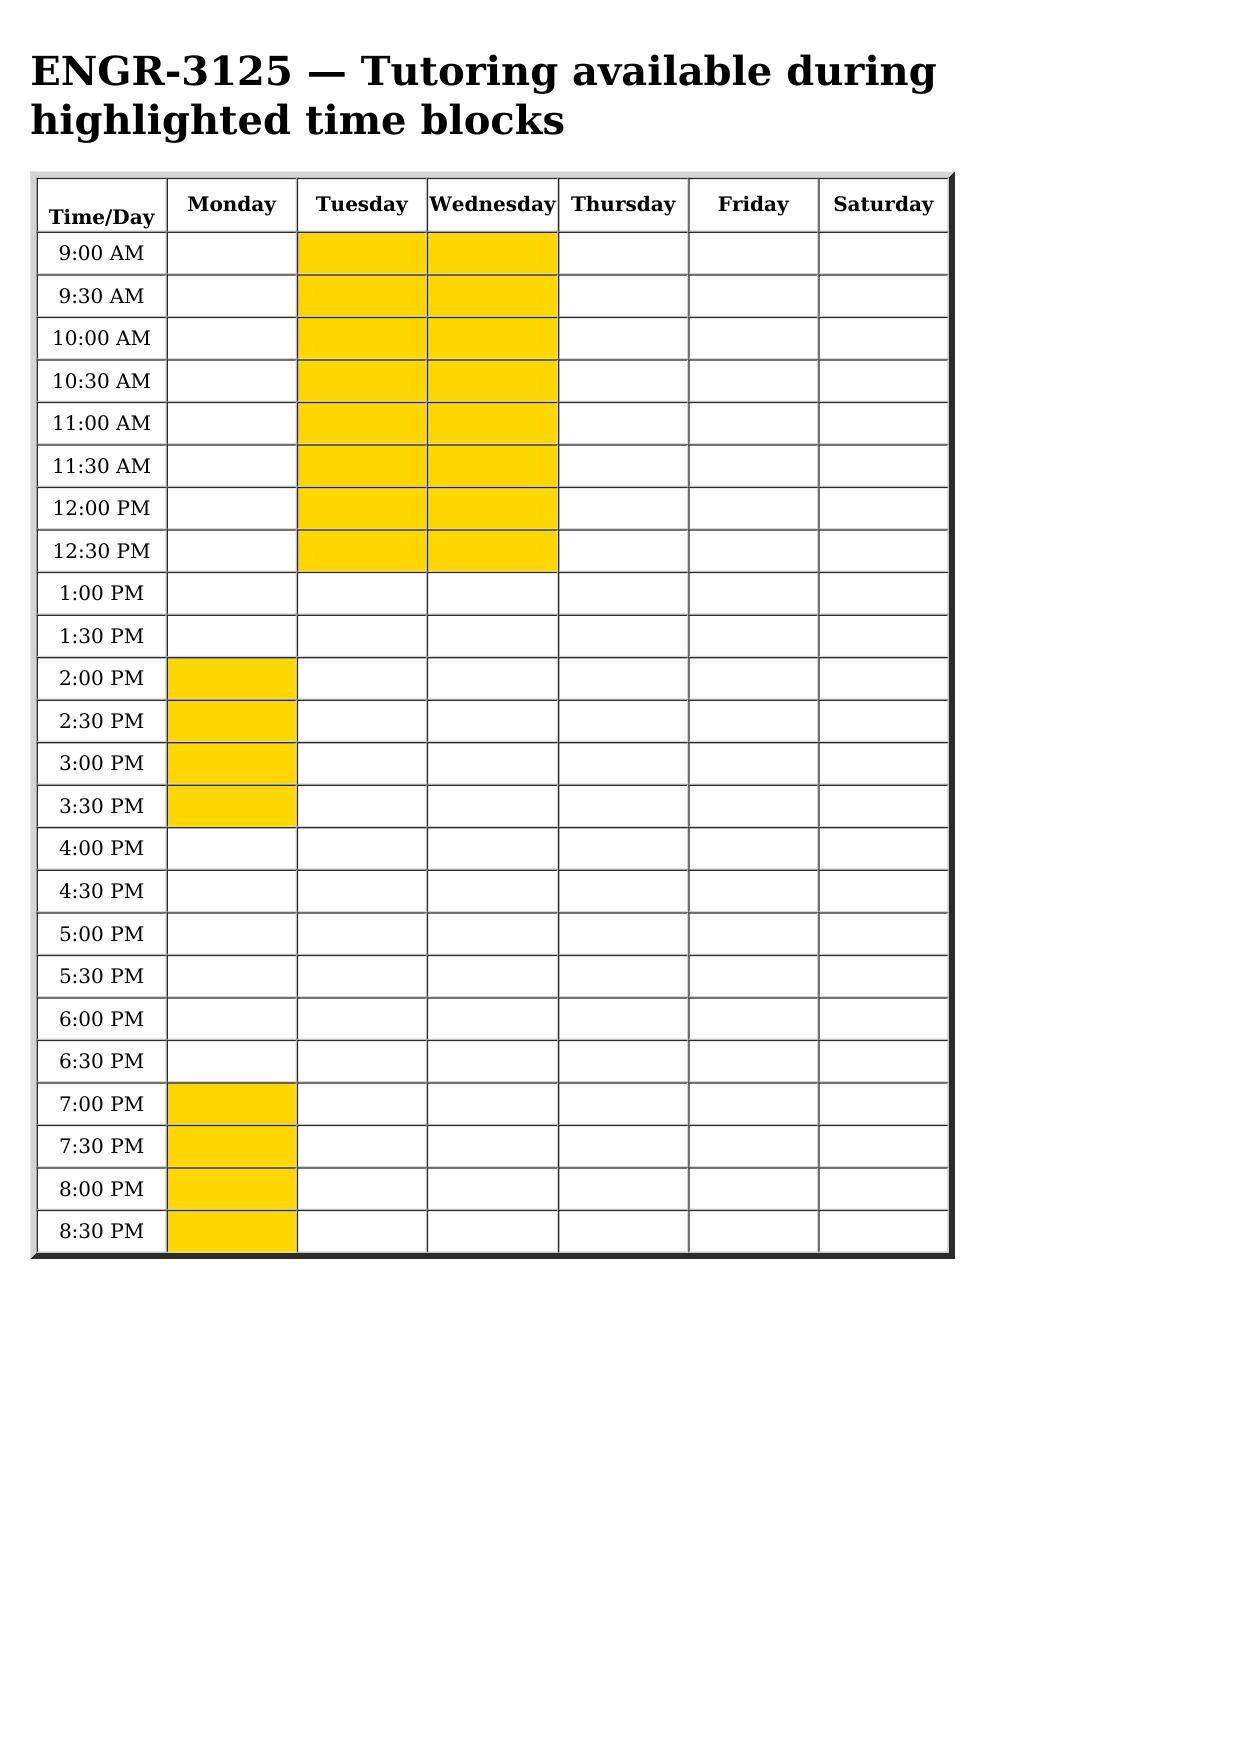 engr 3125 schedule